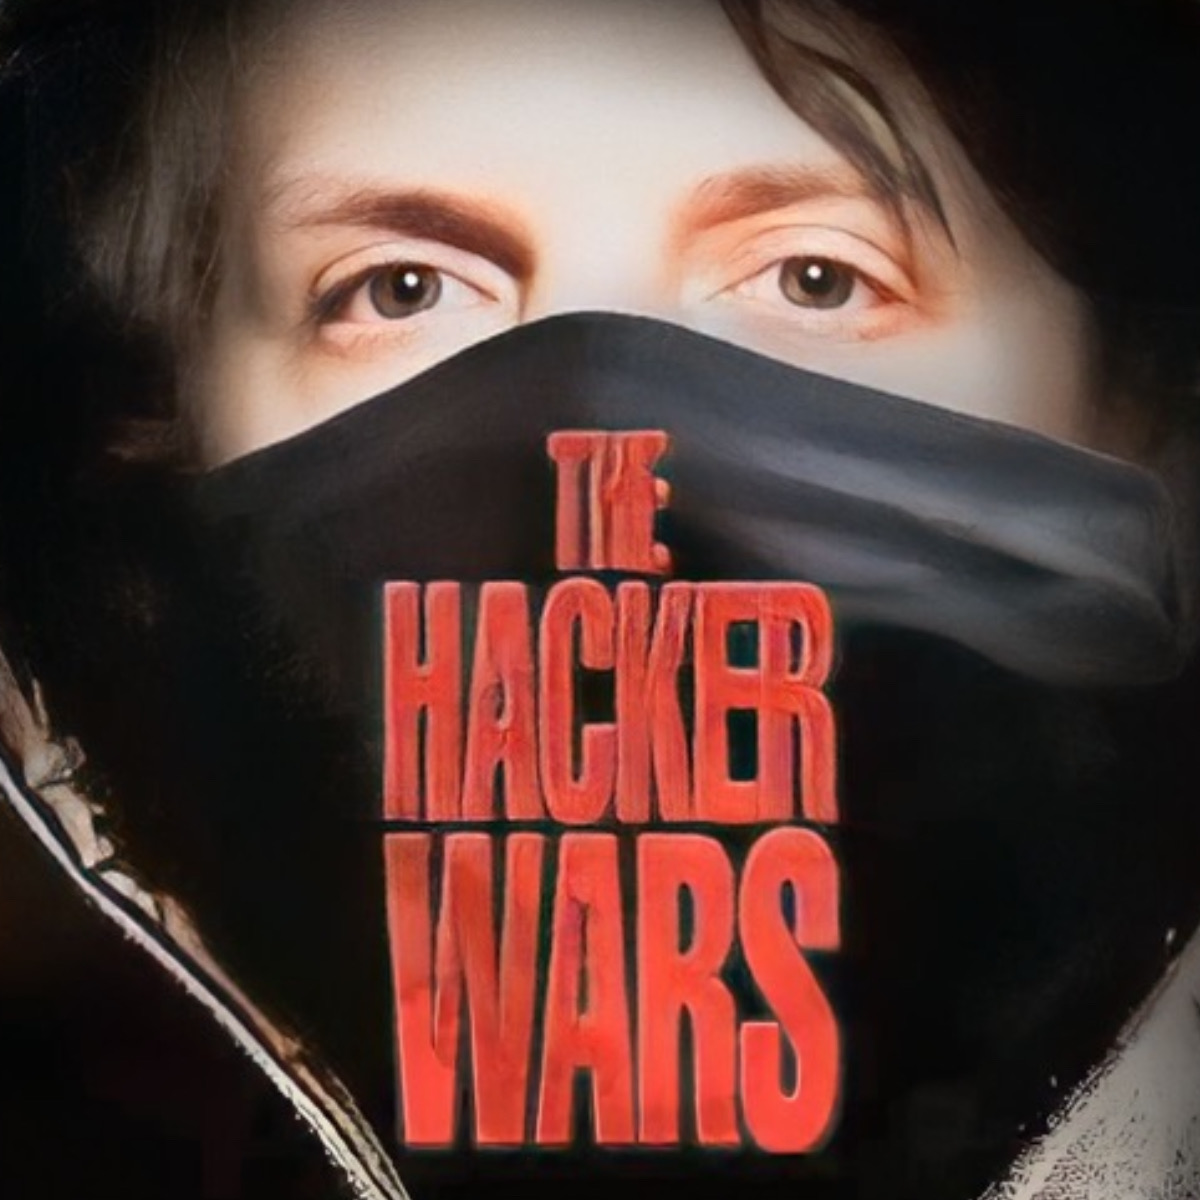 O filme "Hacker Wars" (Guerras dos hackers)